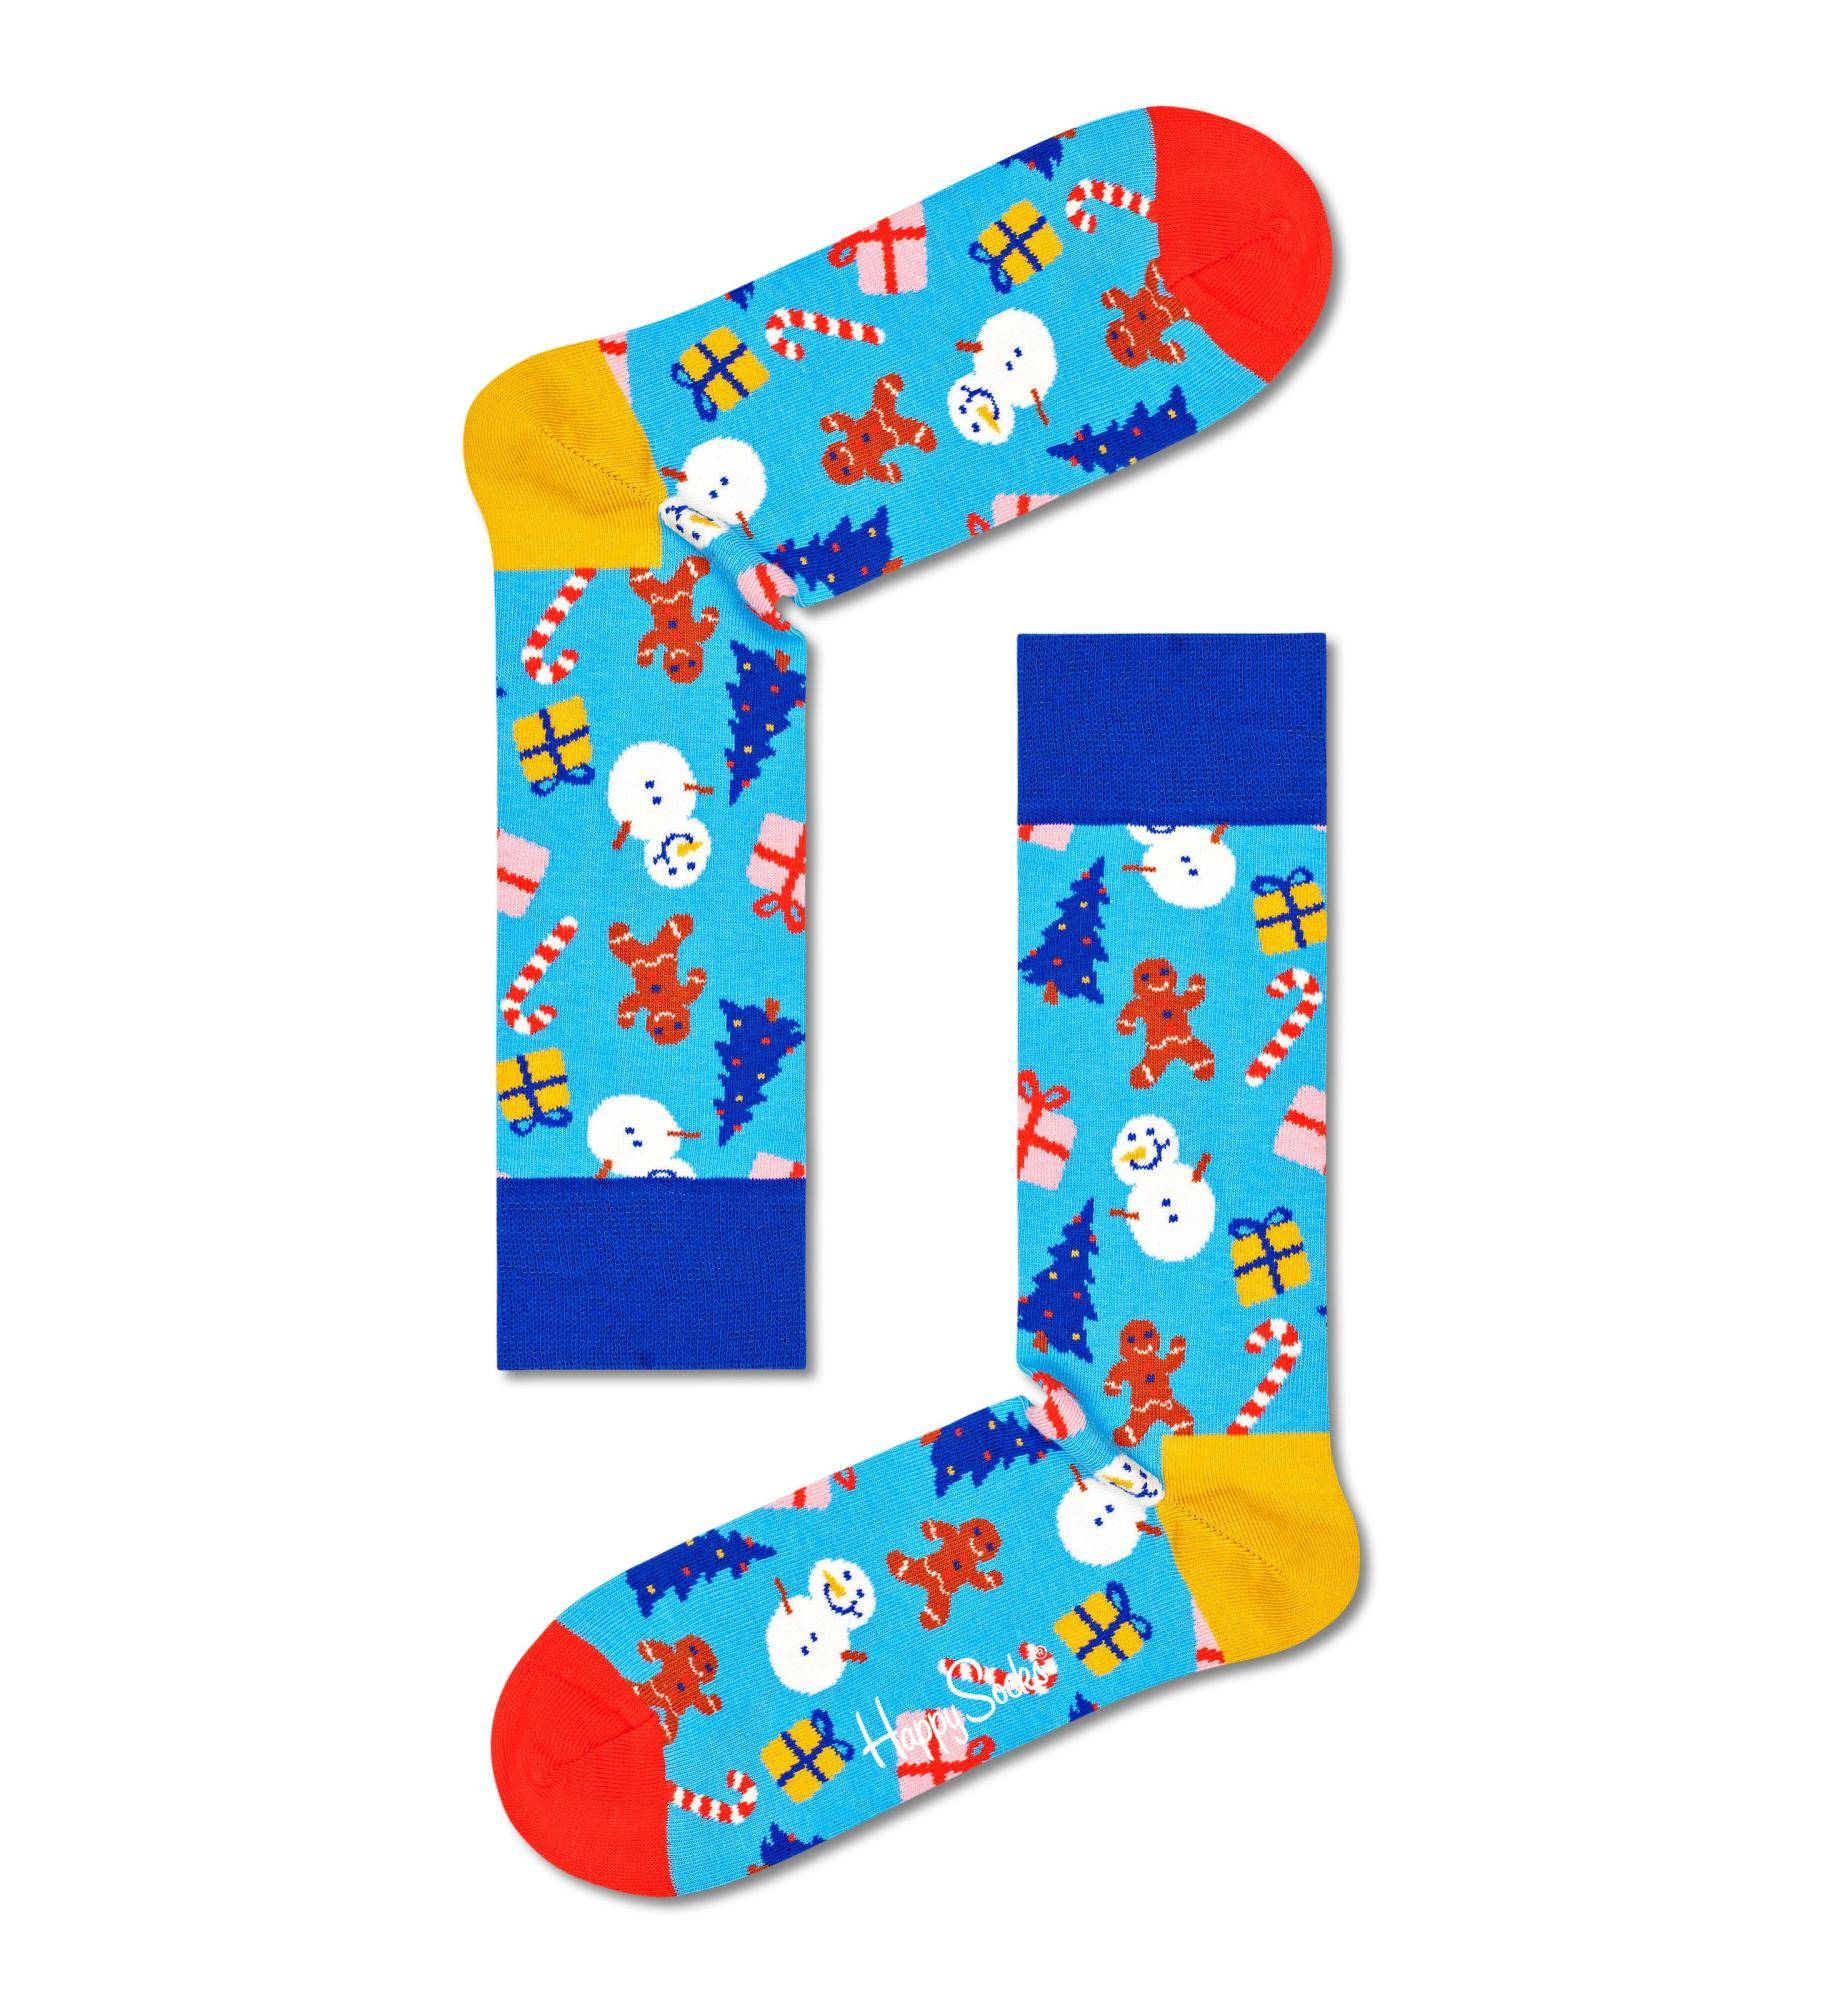 Носки Happy socks Bring It On Sock BIO01 6300, размер 25 - фото 1